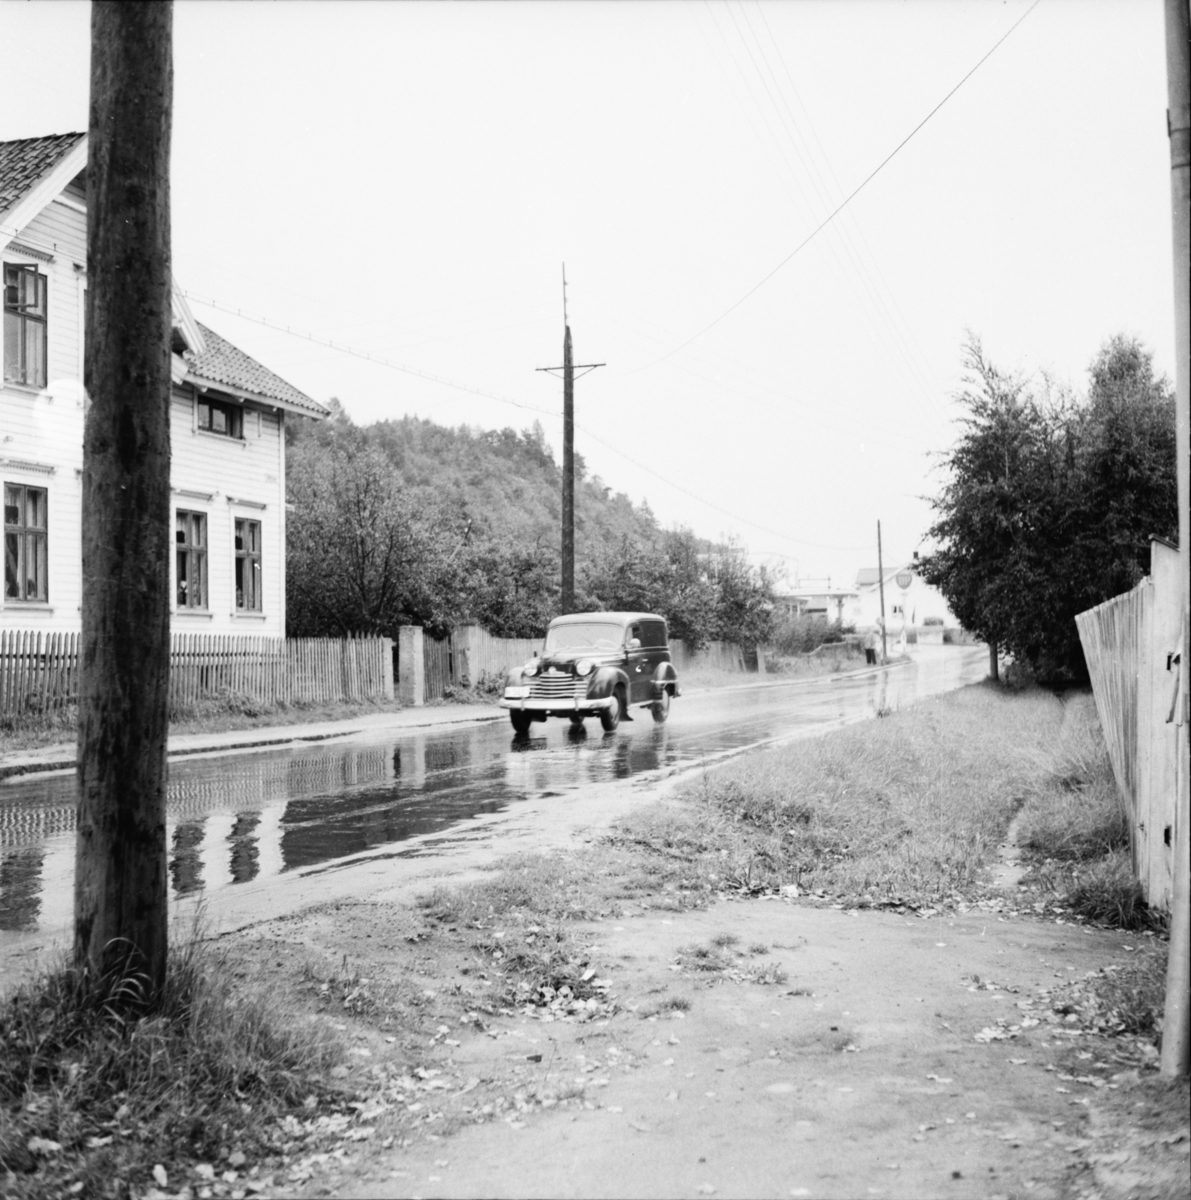 Vardens arkiv. "Trafikkontroll på Bøleveien". 09.09.1953
Opel Olympia varebil 1950-52.